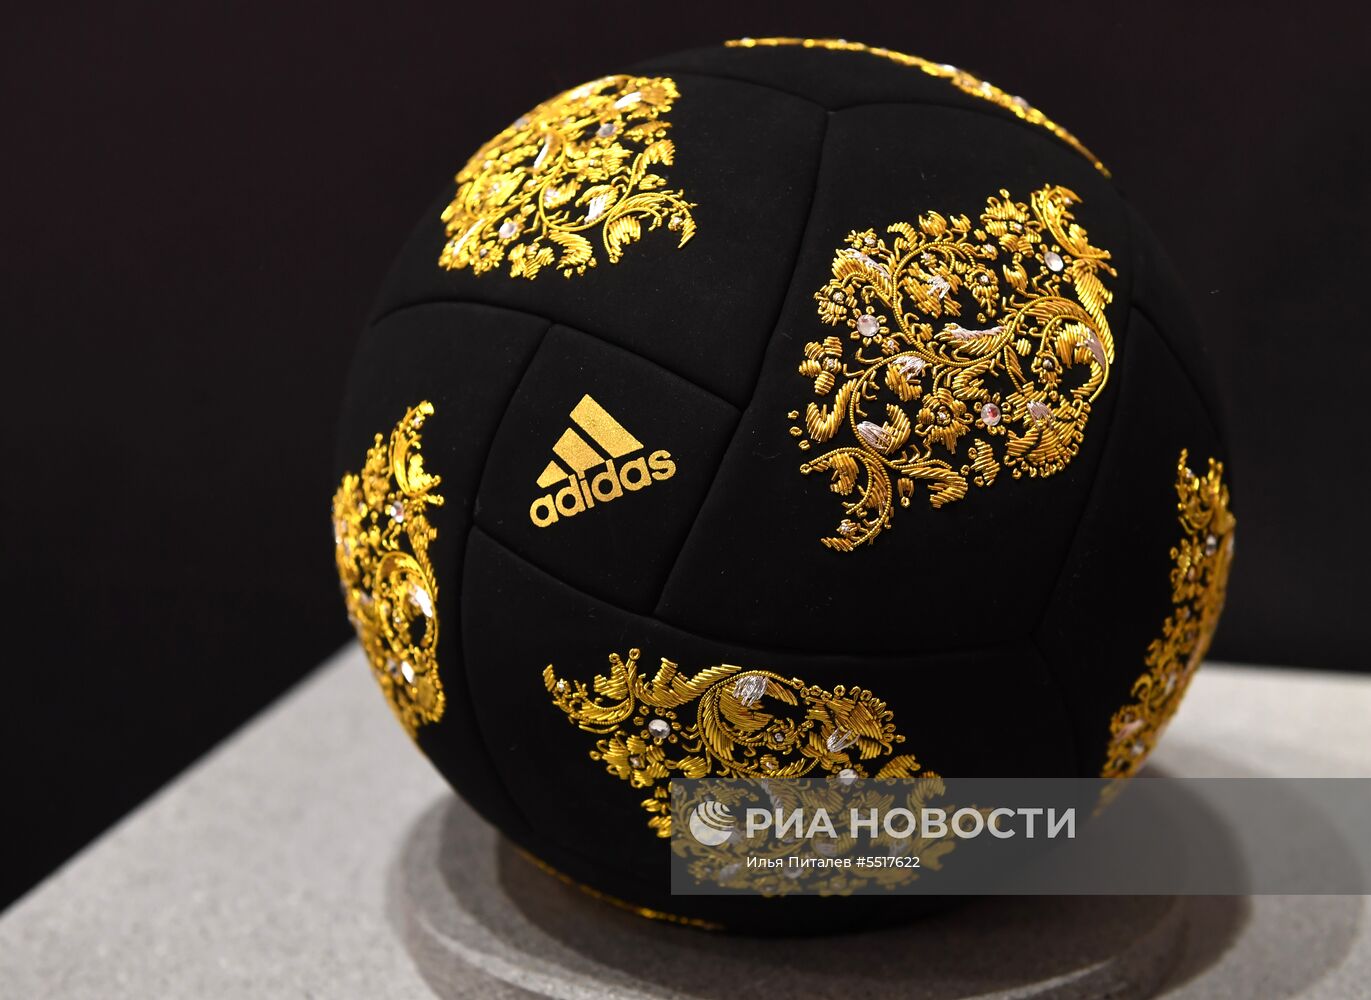 Открытие поп-ап-стора Adidas к ЧМ-2018 по футболу